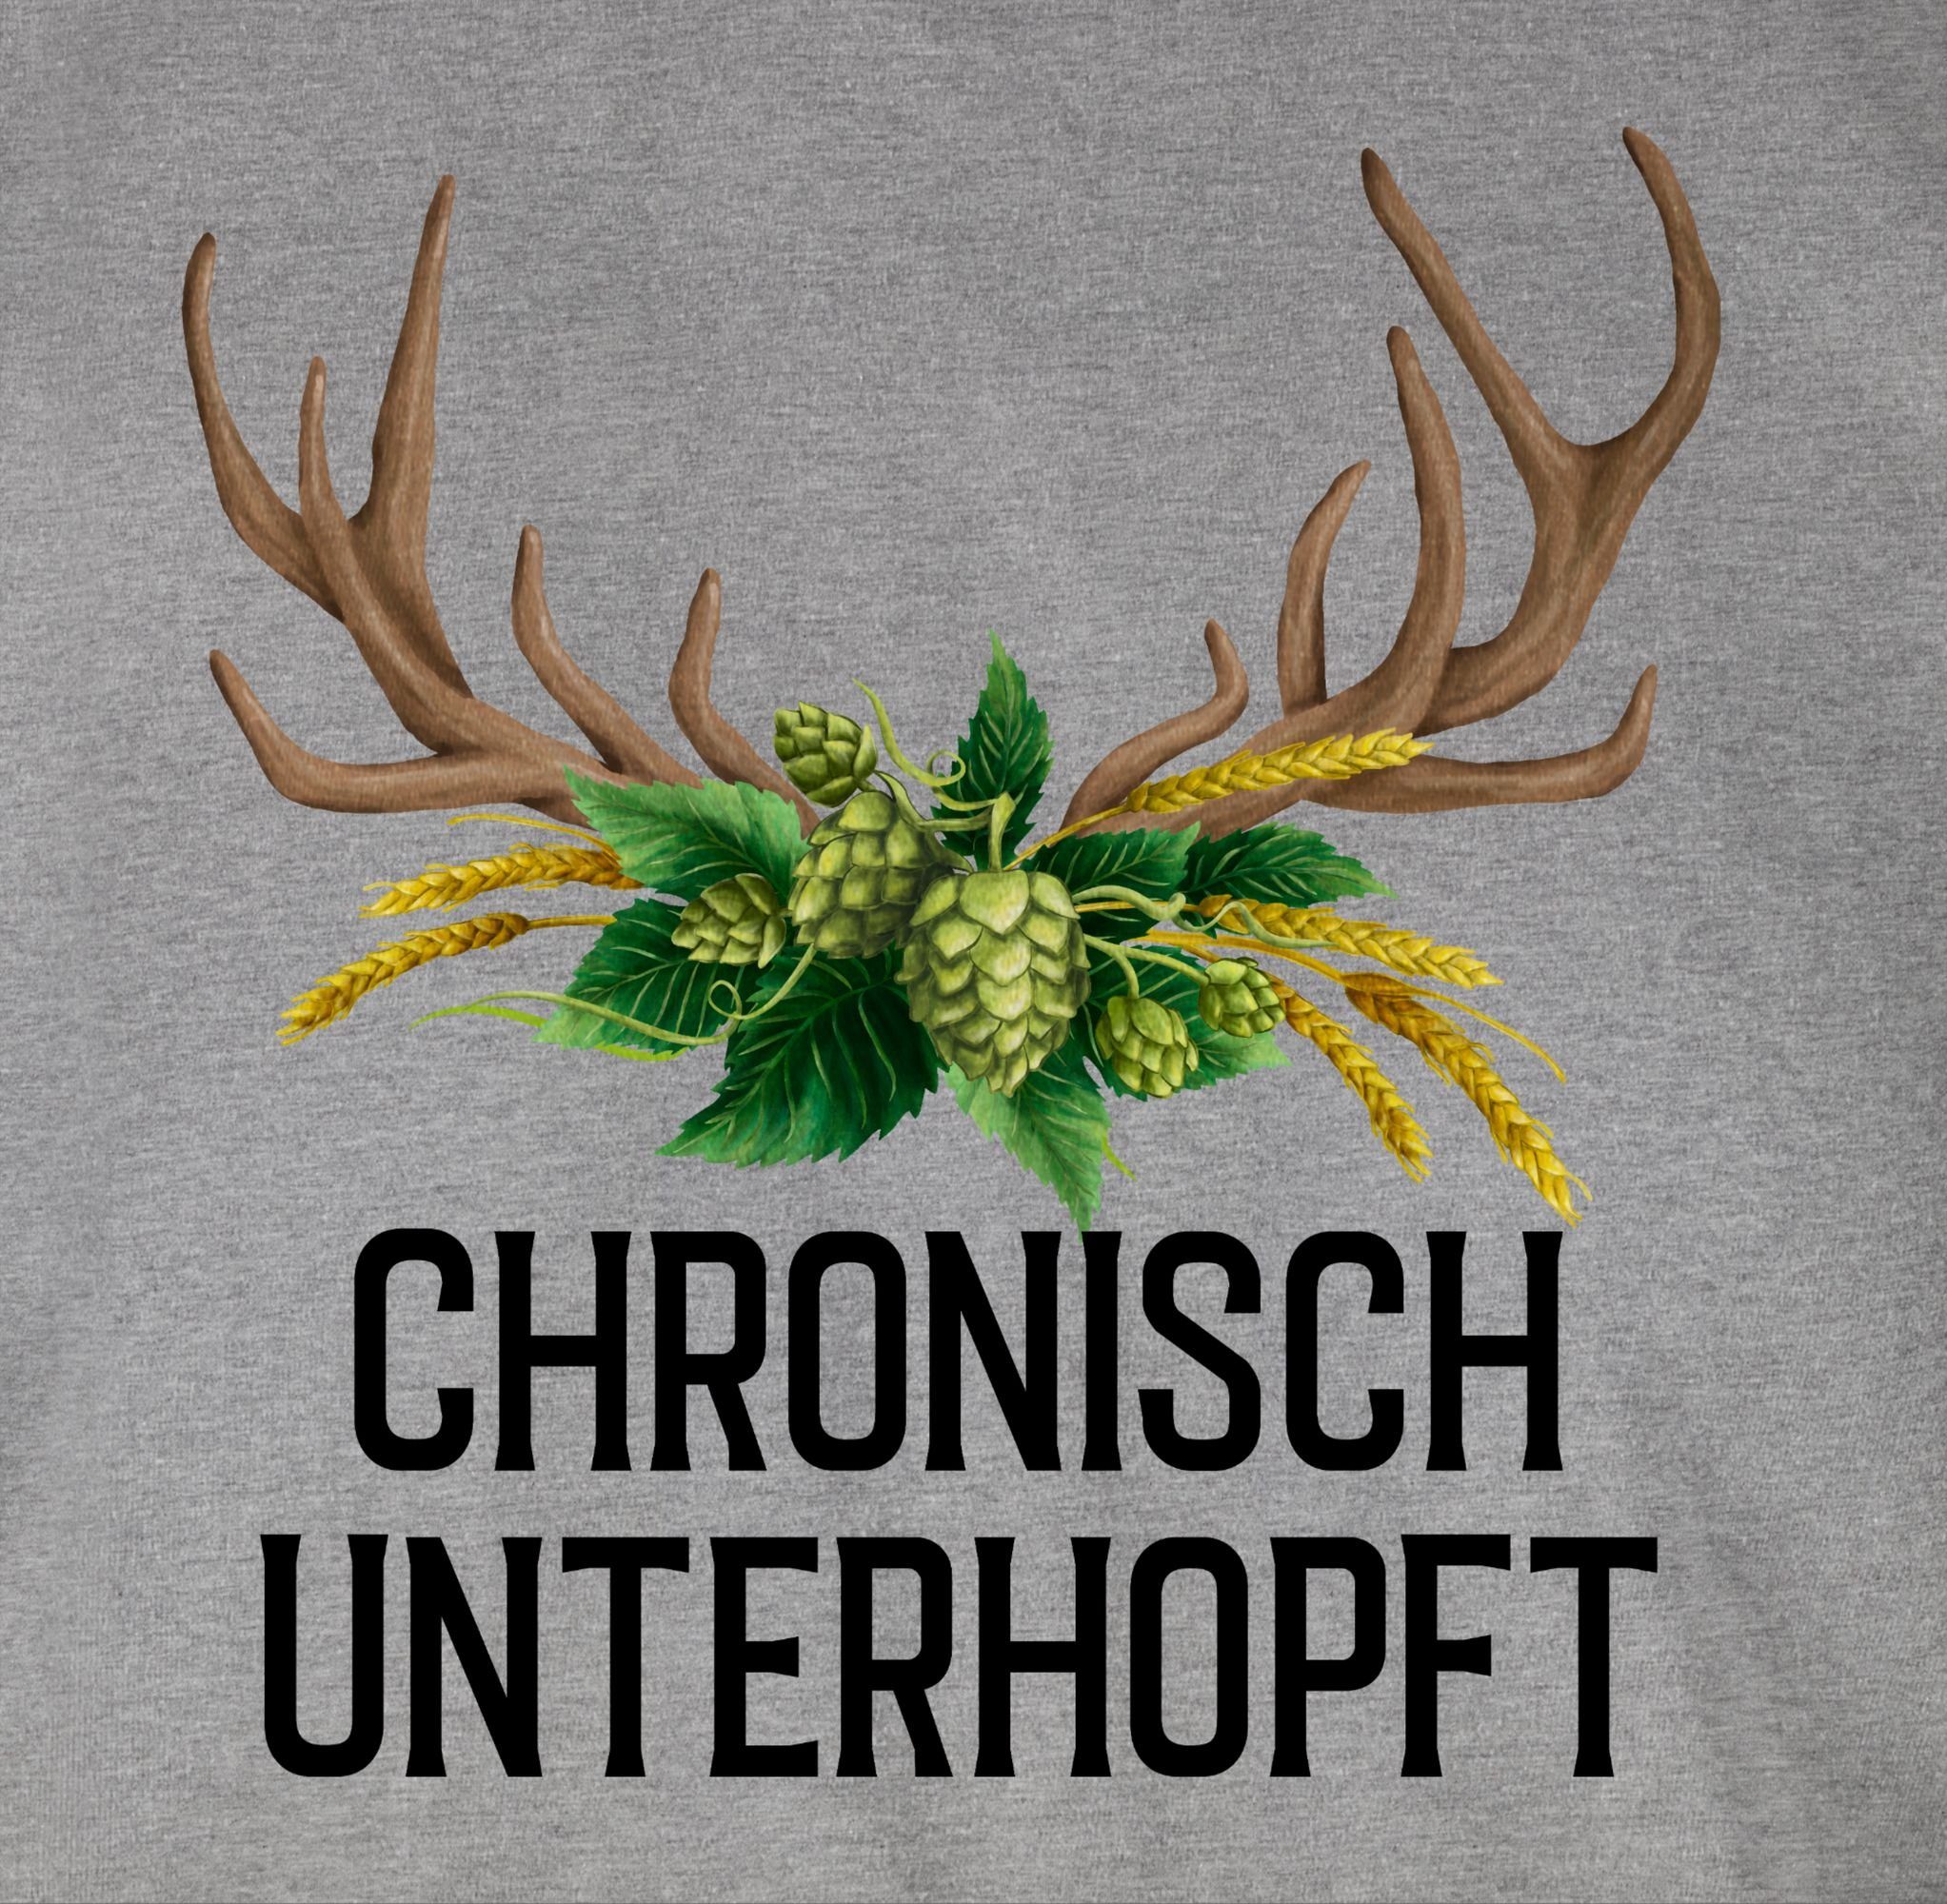 Herren Hopfen unterhopft Chronisch - T-Shirt Weizen und Shirtracer für Hirschgeweih 03 Grau Mode Oktoberfest meliert